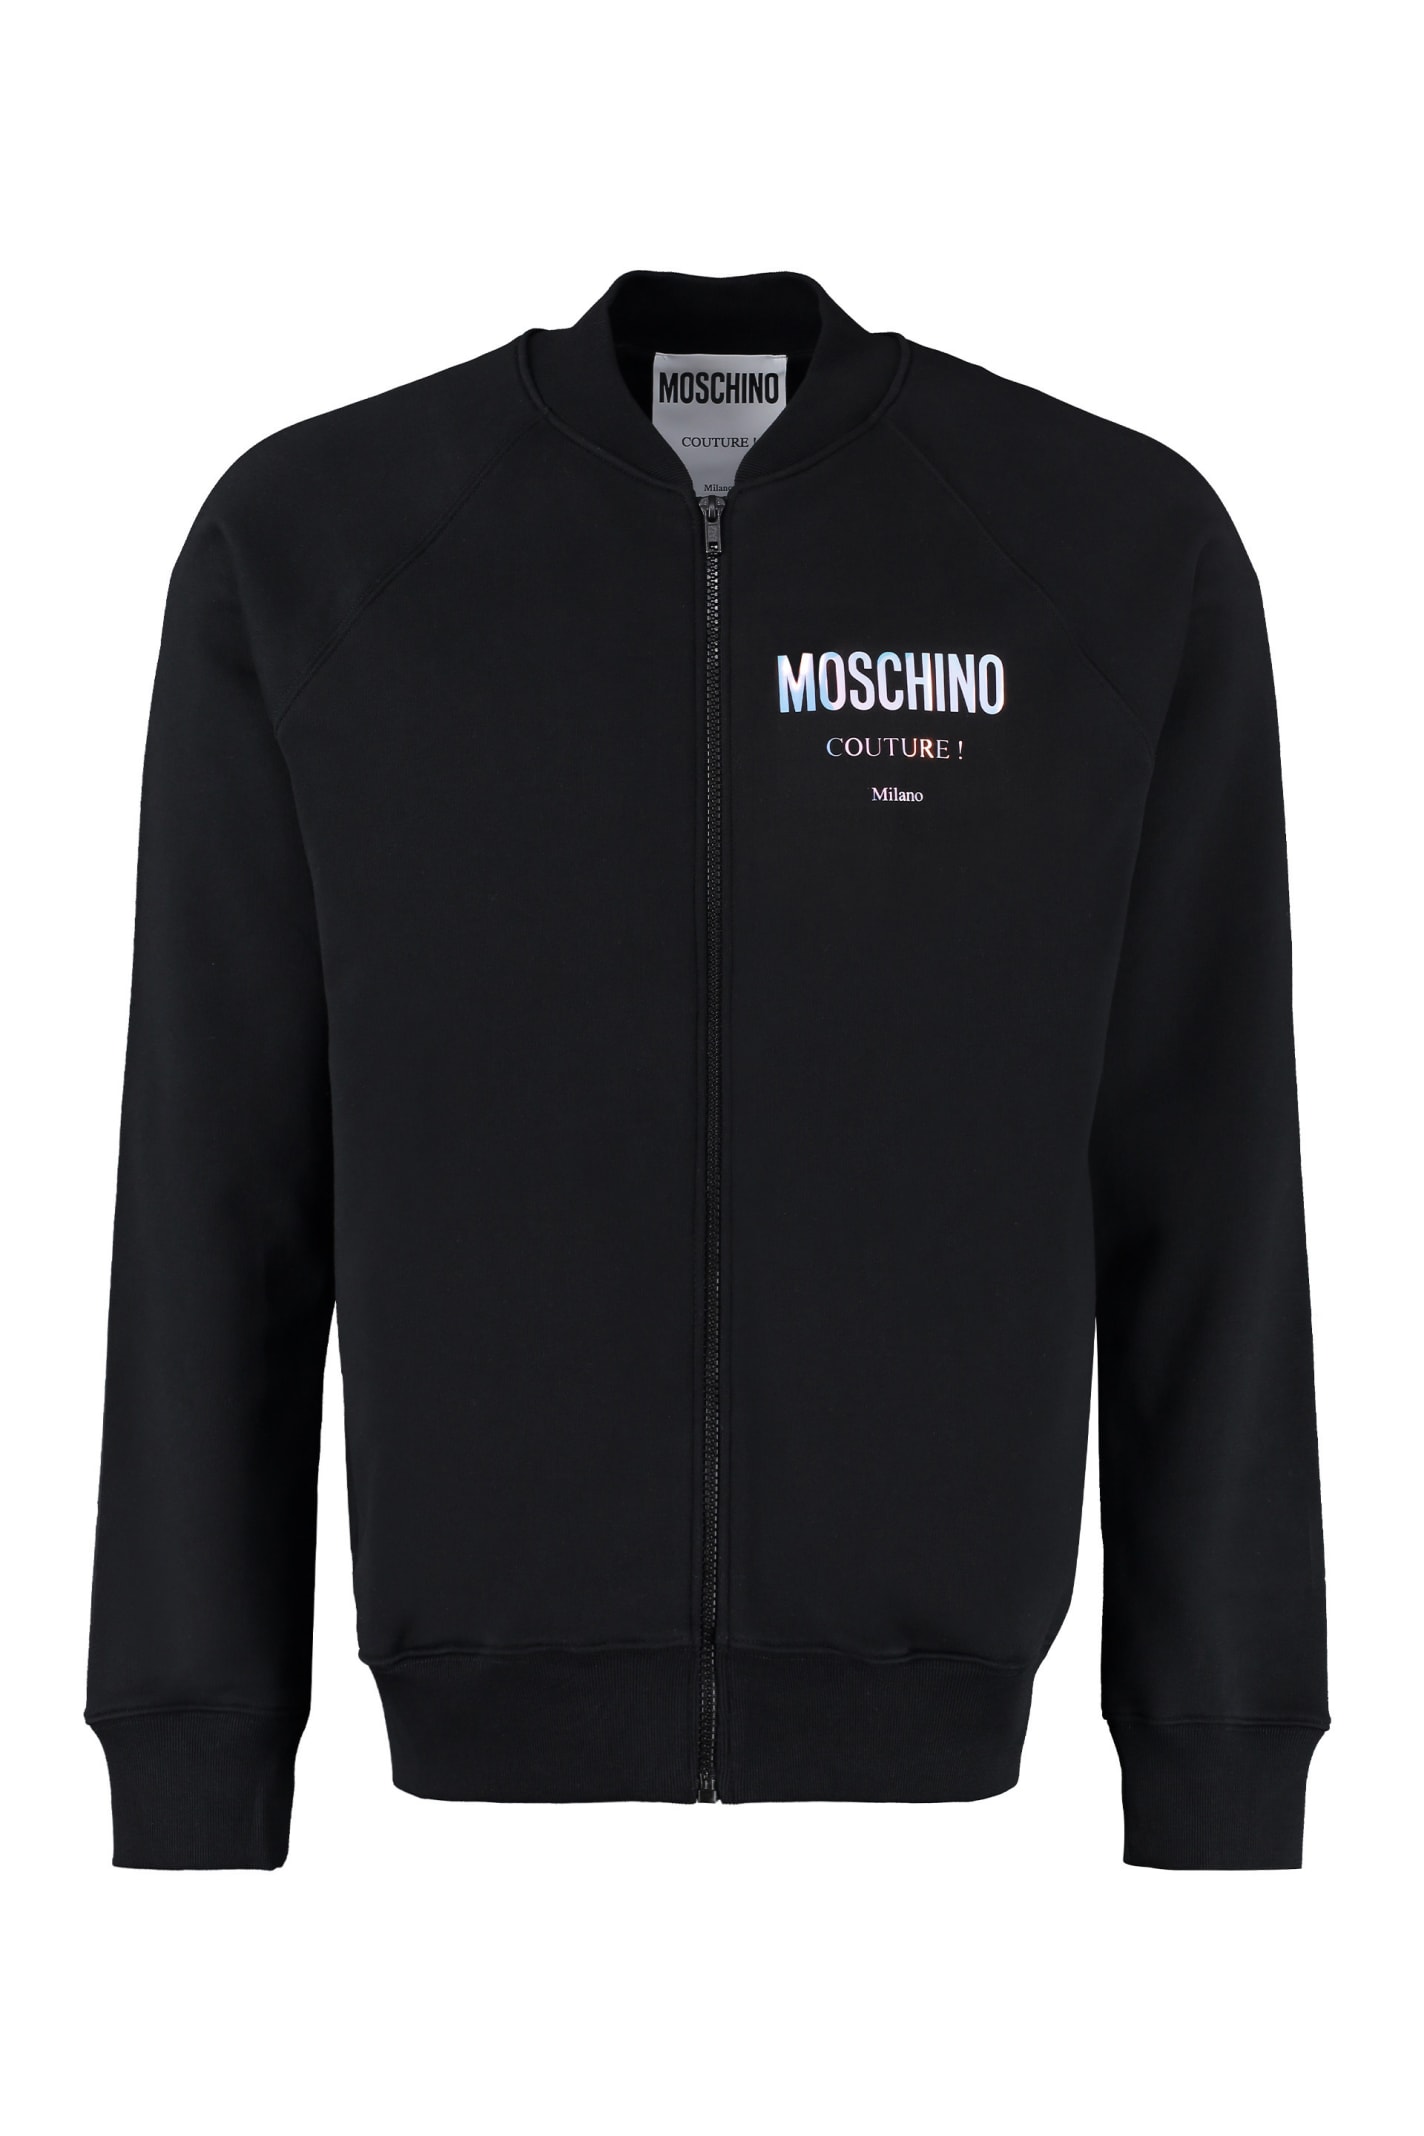 Moschino Cotton Full-zip Sweatshirt